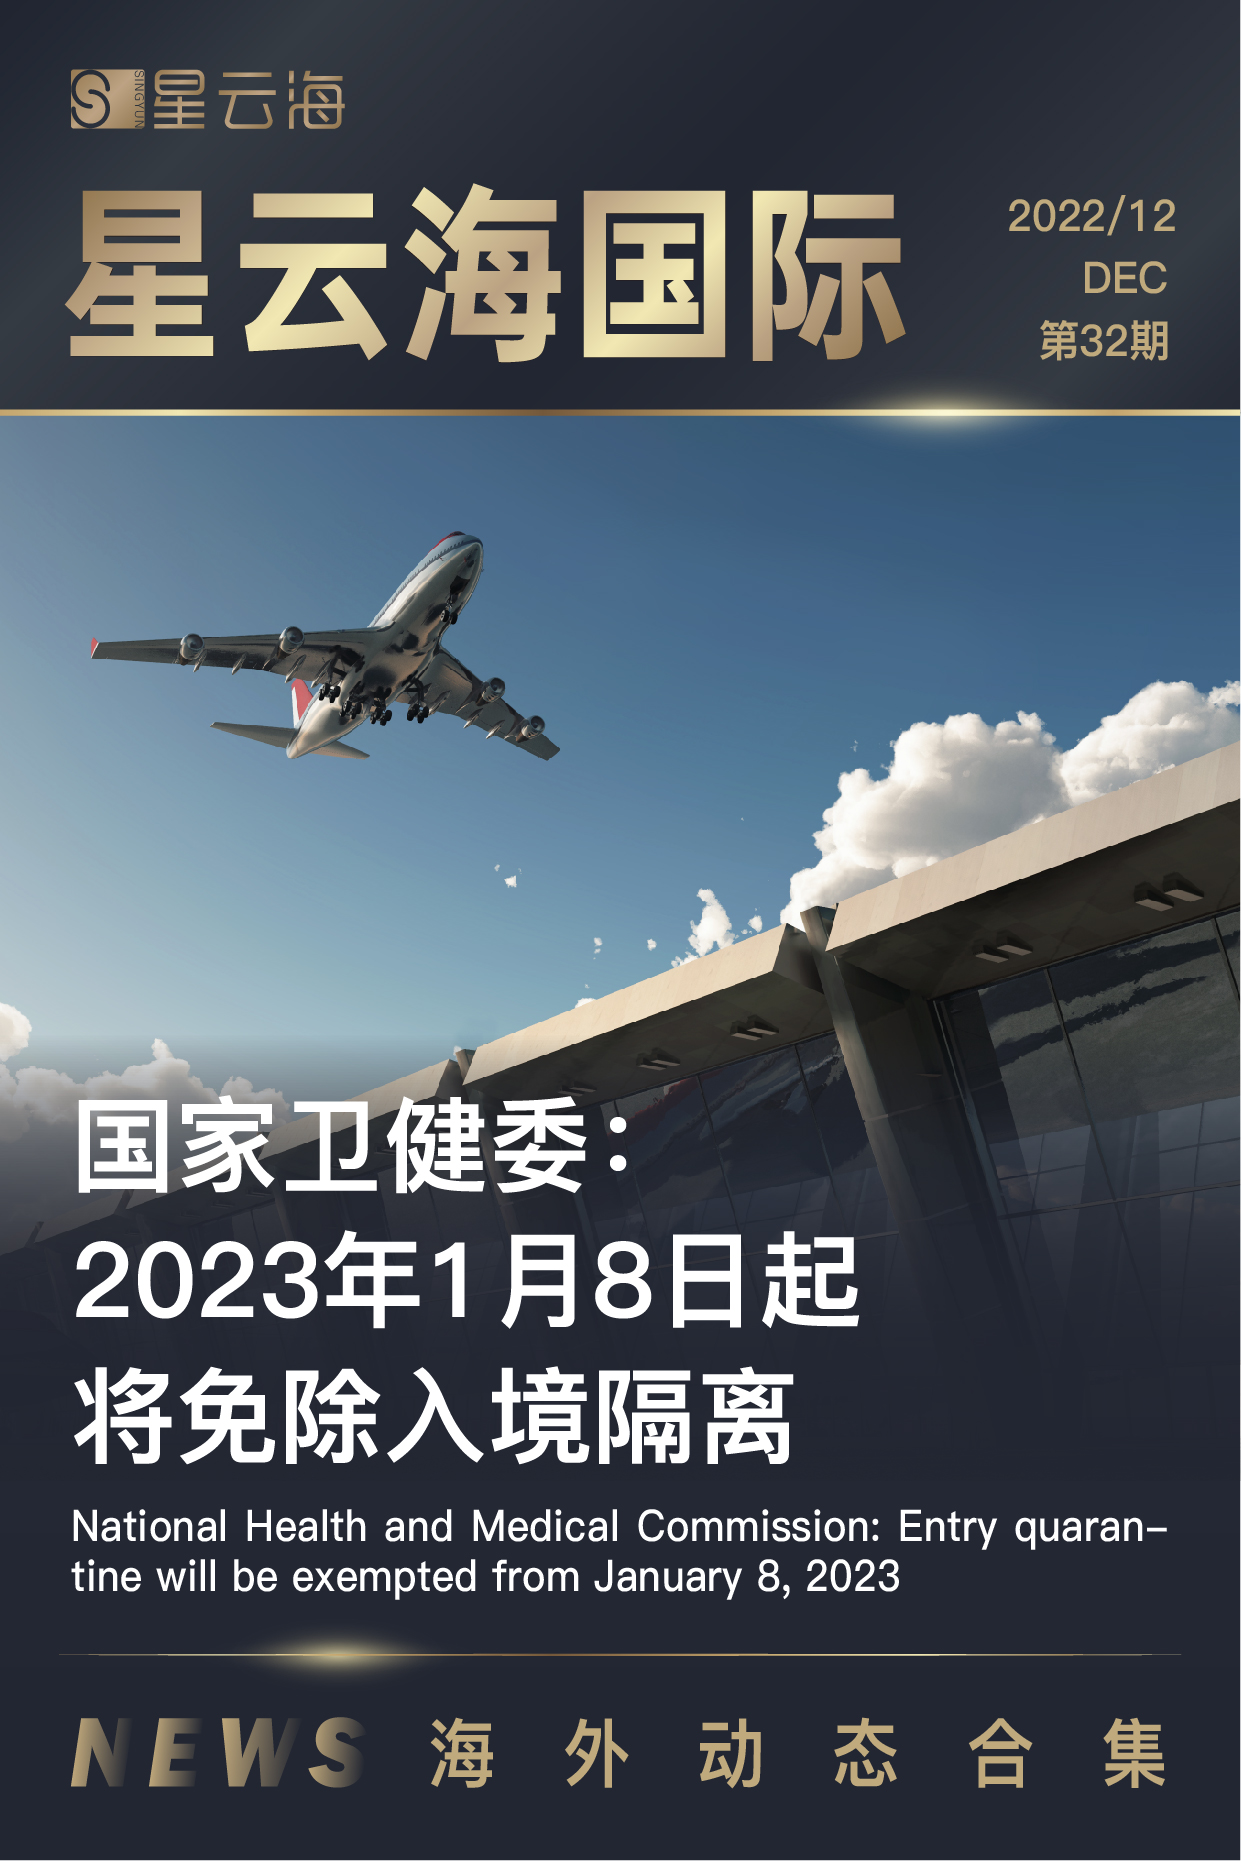 Xingyunhai International | 2022 December issue